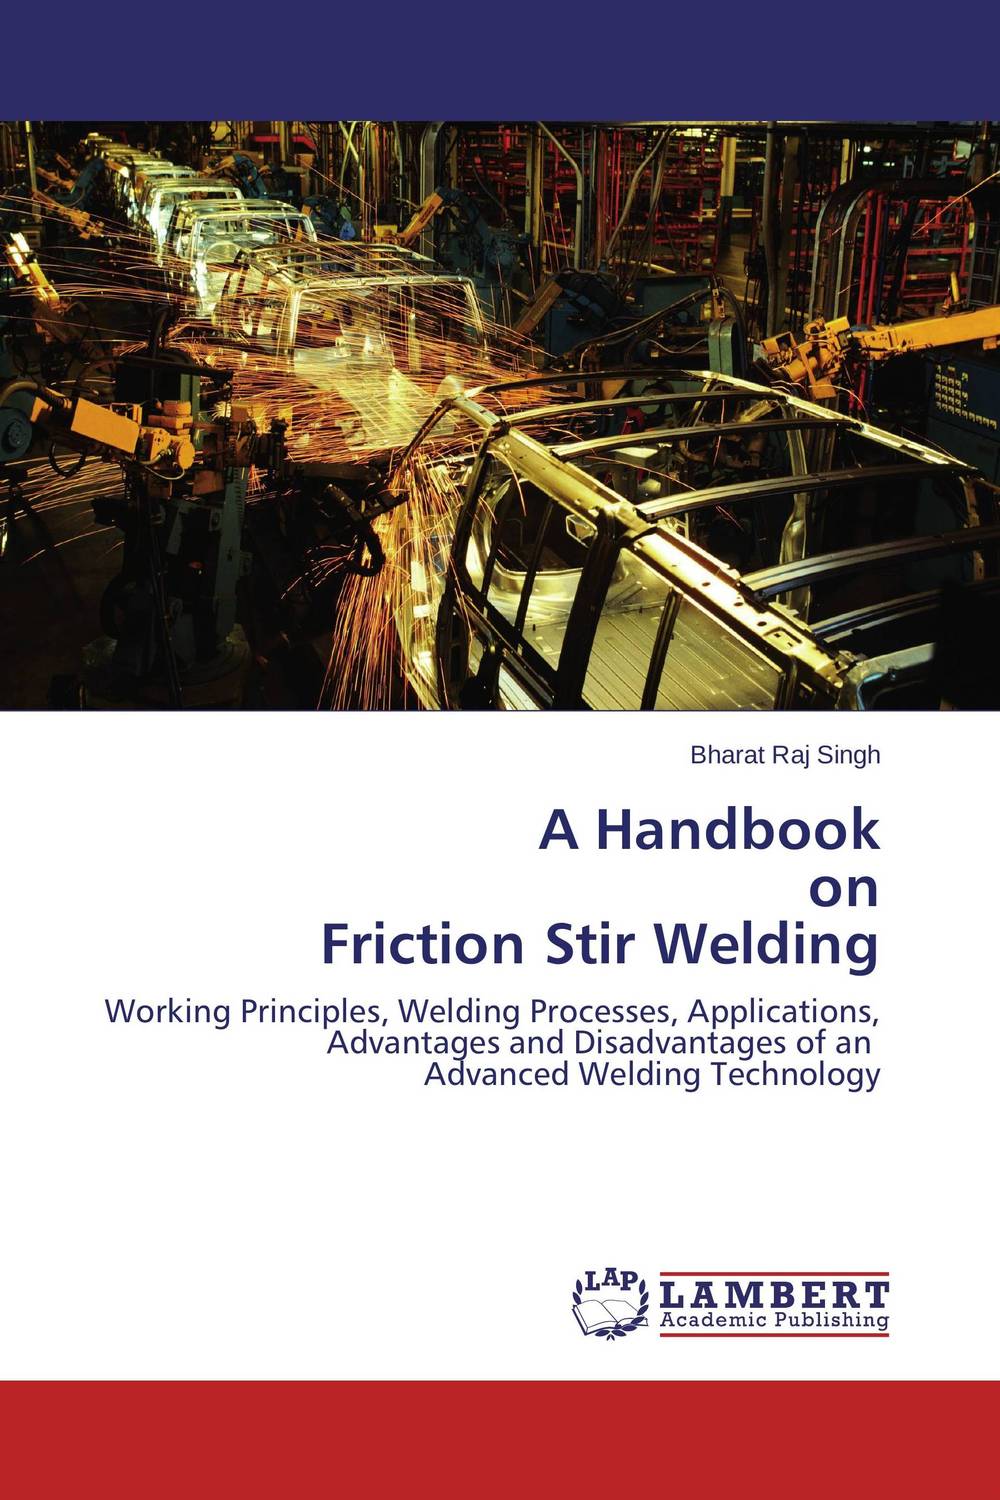 A Handbook on Friction Stir Welding